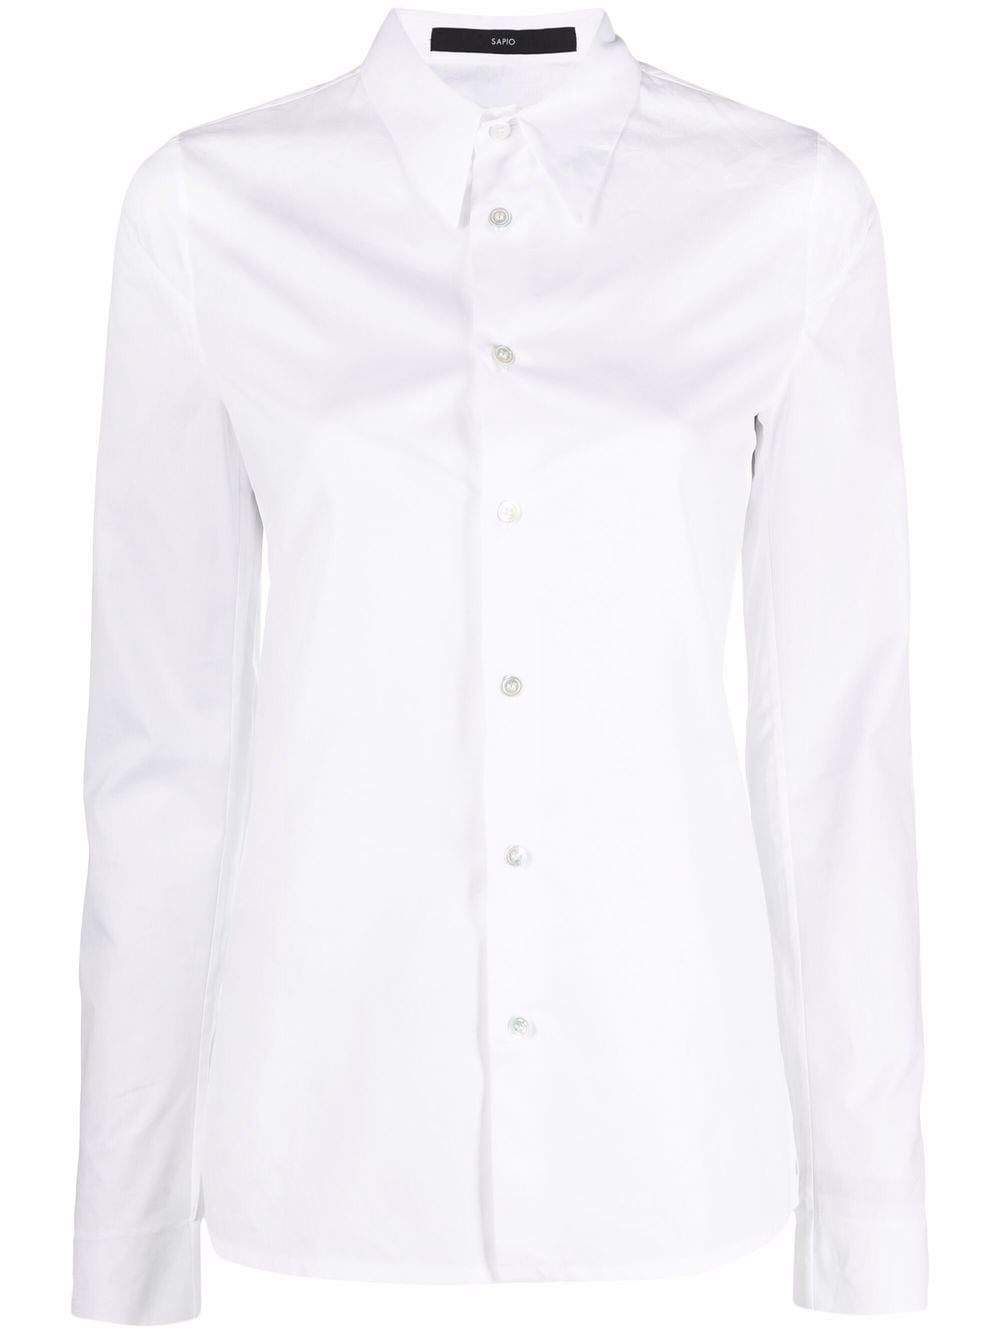 SAPIO No 16 cotton shirt - White von SAPIO